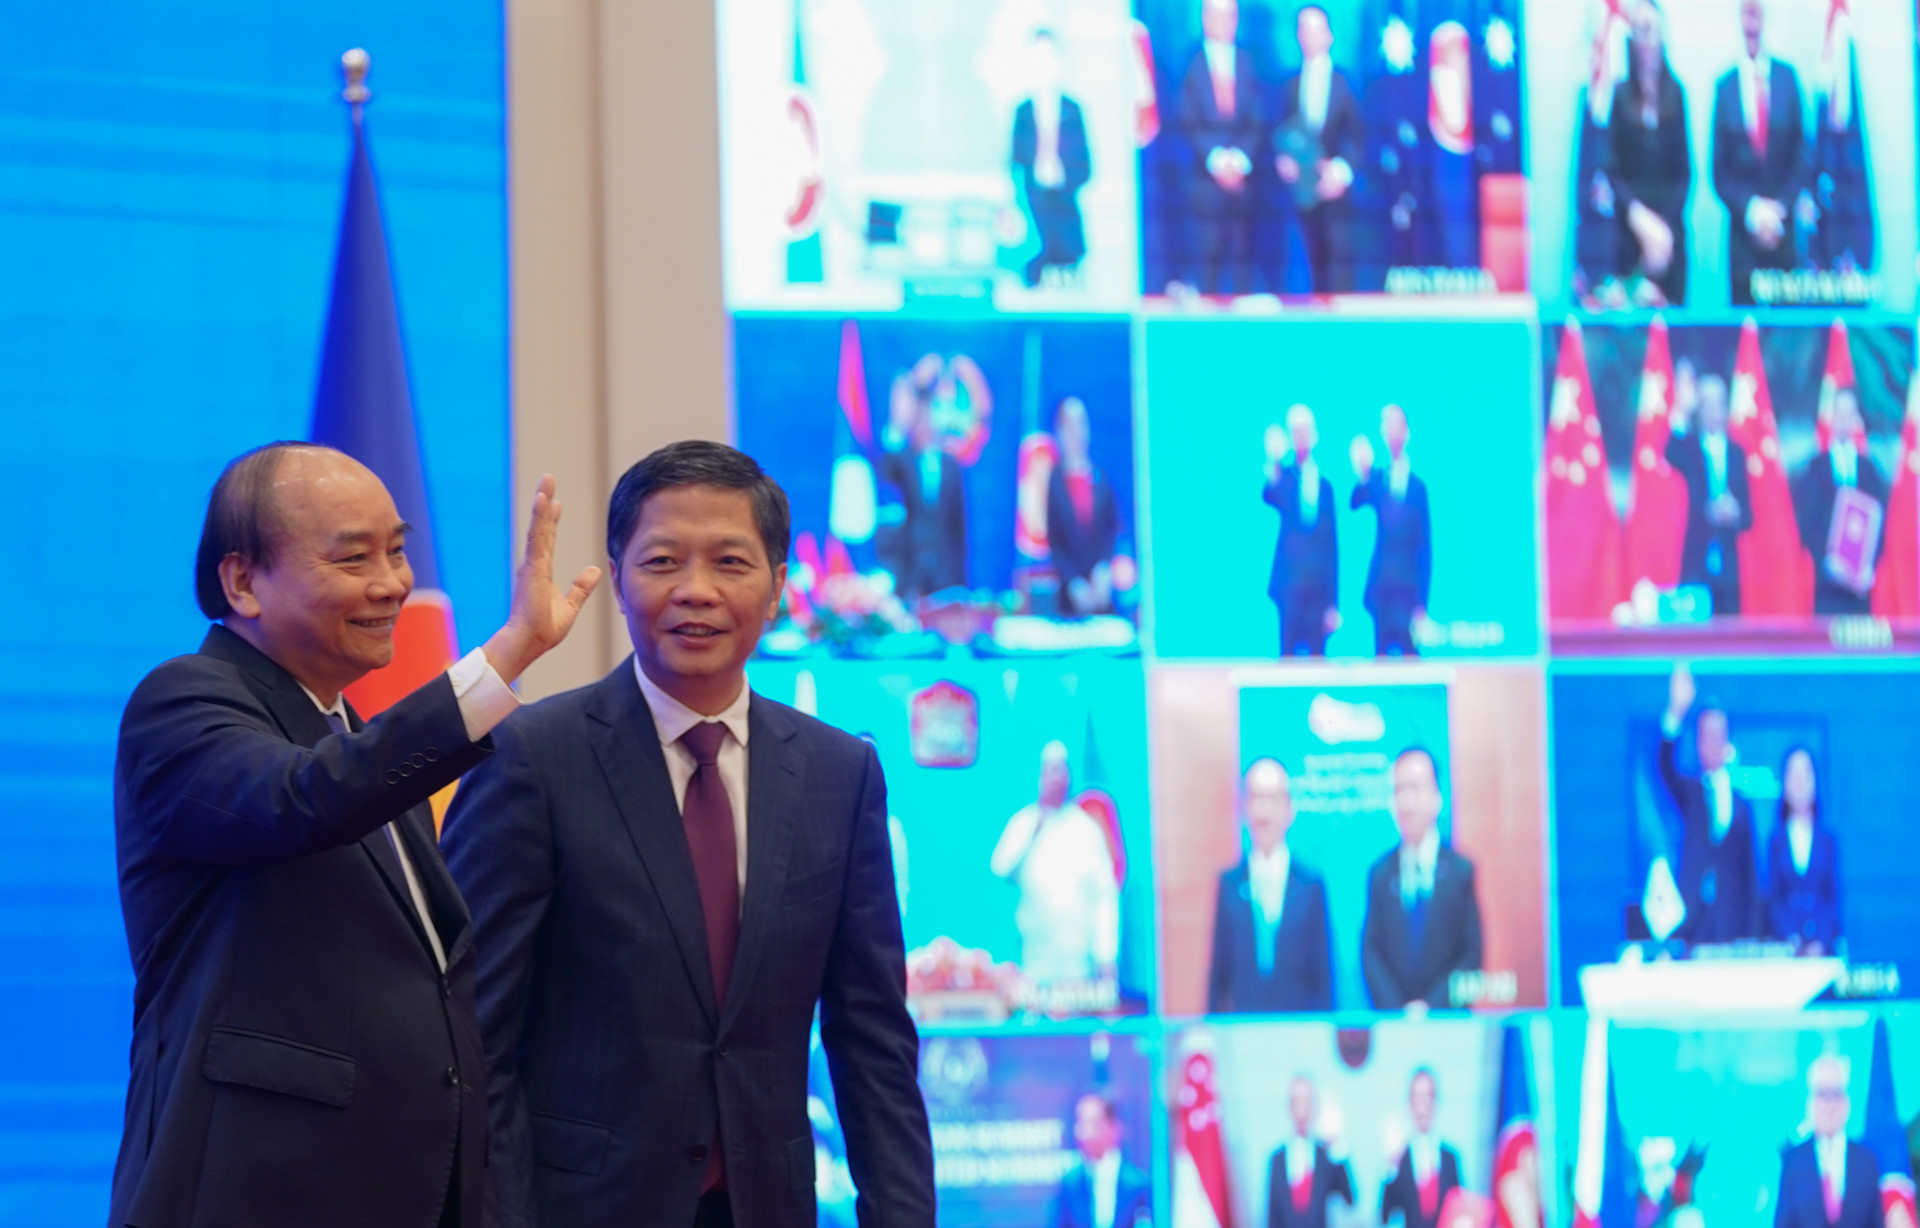  Từ đầu cầu Hà Nội, Thủ tướng Nguyễn Xuân Phúc gửi lời chào tới các nhà lãnh đạo ASEAN trong lễ ký Hiệp định RCEP. Ảnh: VGP/Quang Hiếu